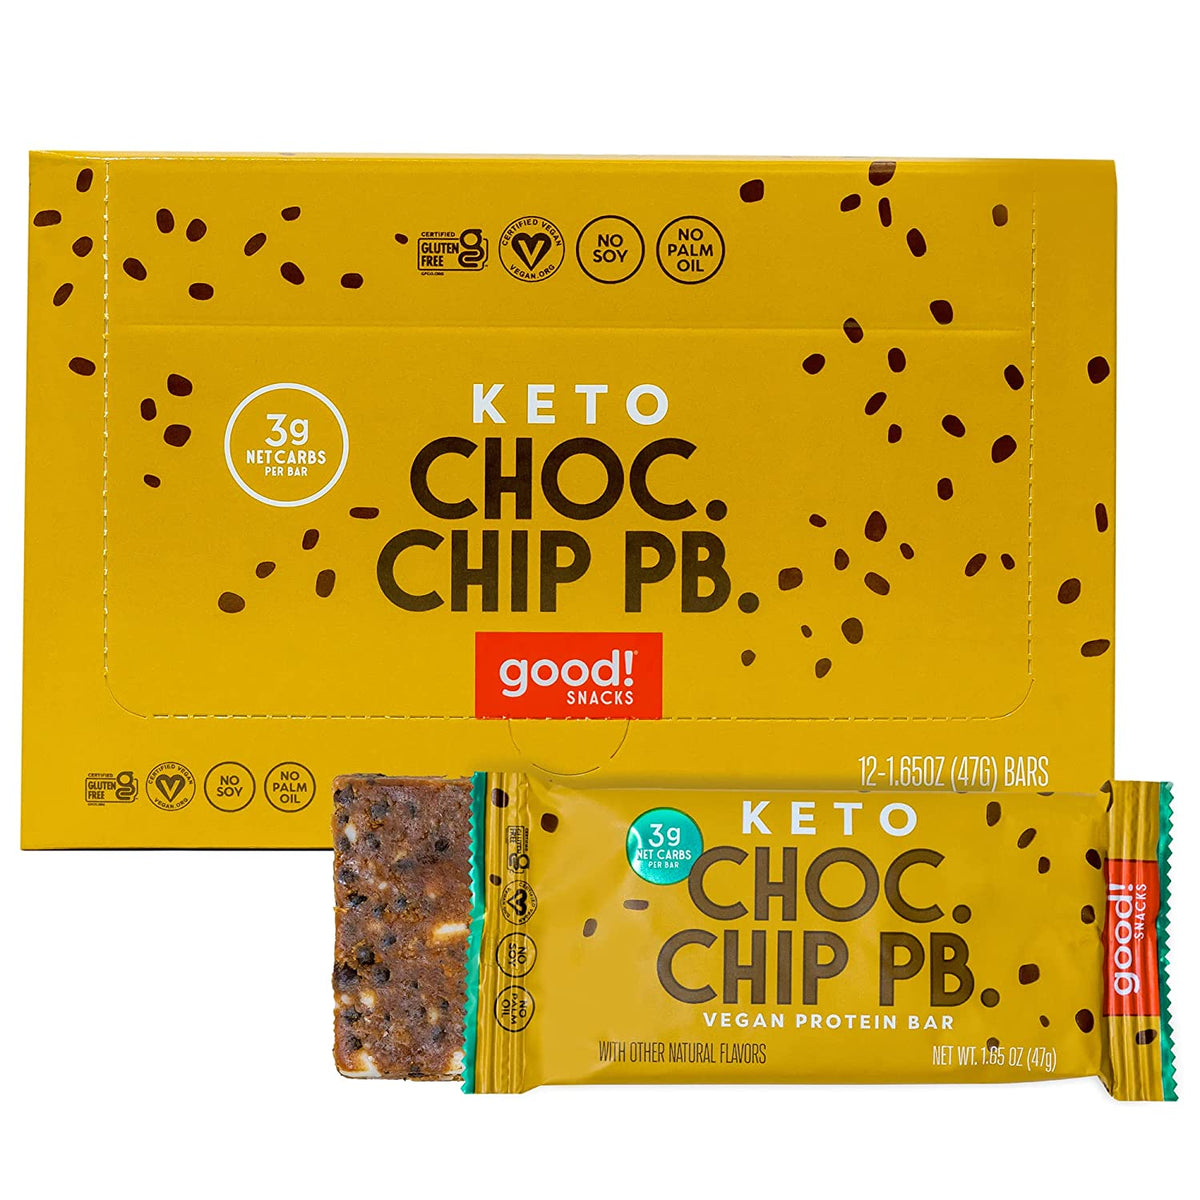 good!® KETO™ Choc Chip PB